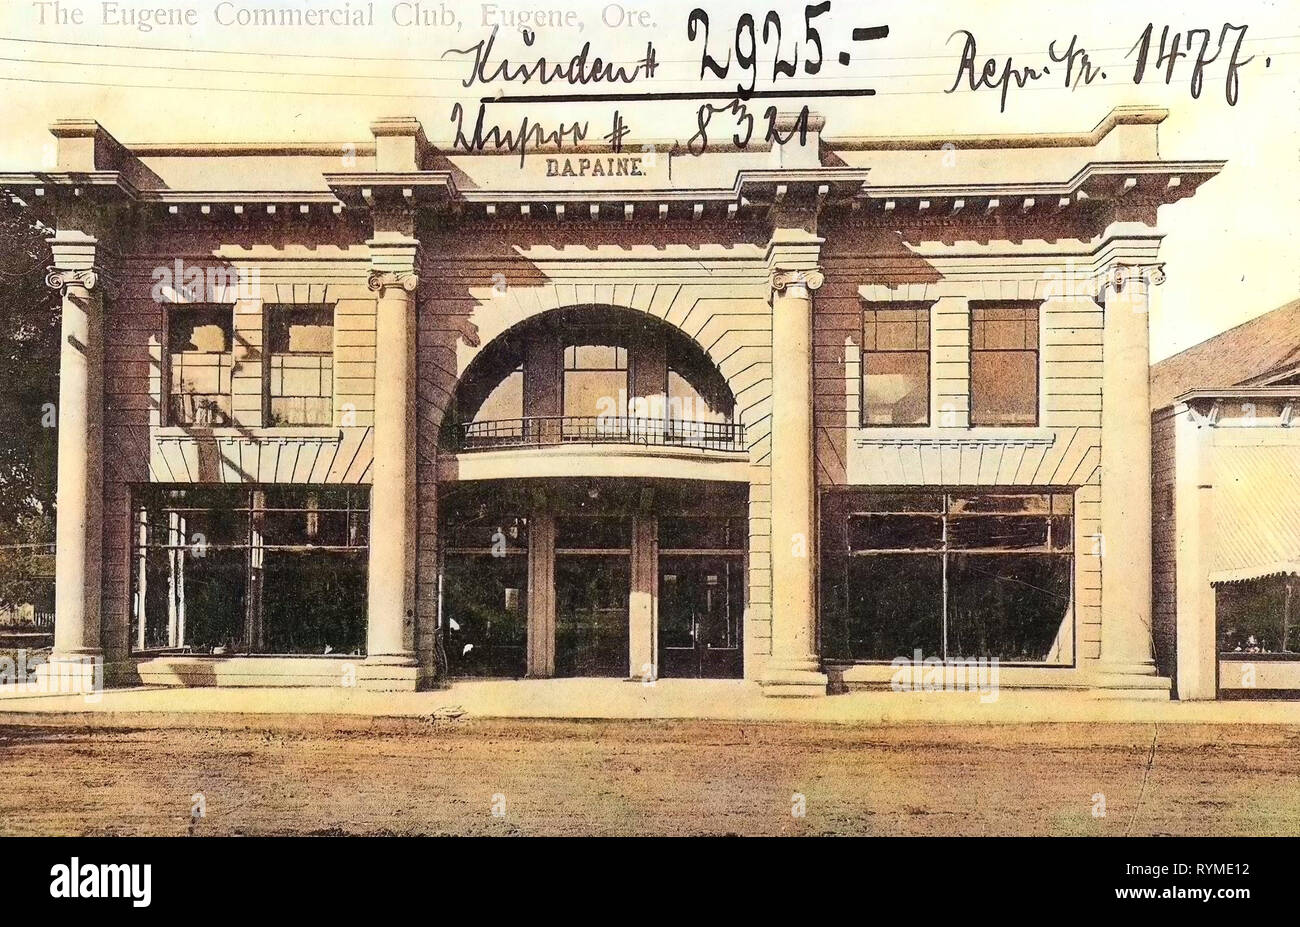 Bâtiments à Eugene, Oregon, 1906, Eugene, Oregon, le Commercial Club' Eugene, États-Unis d'Amérique Banque D'Images